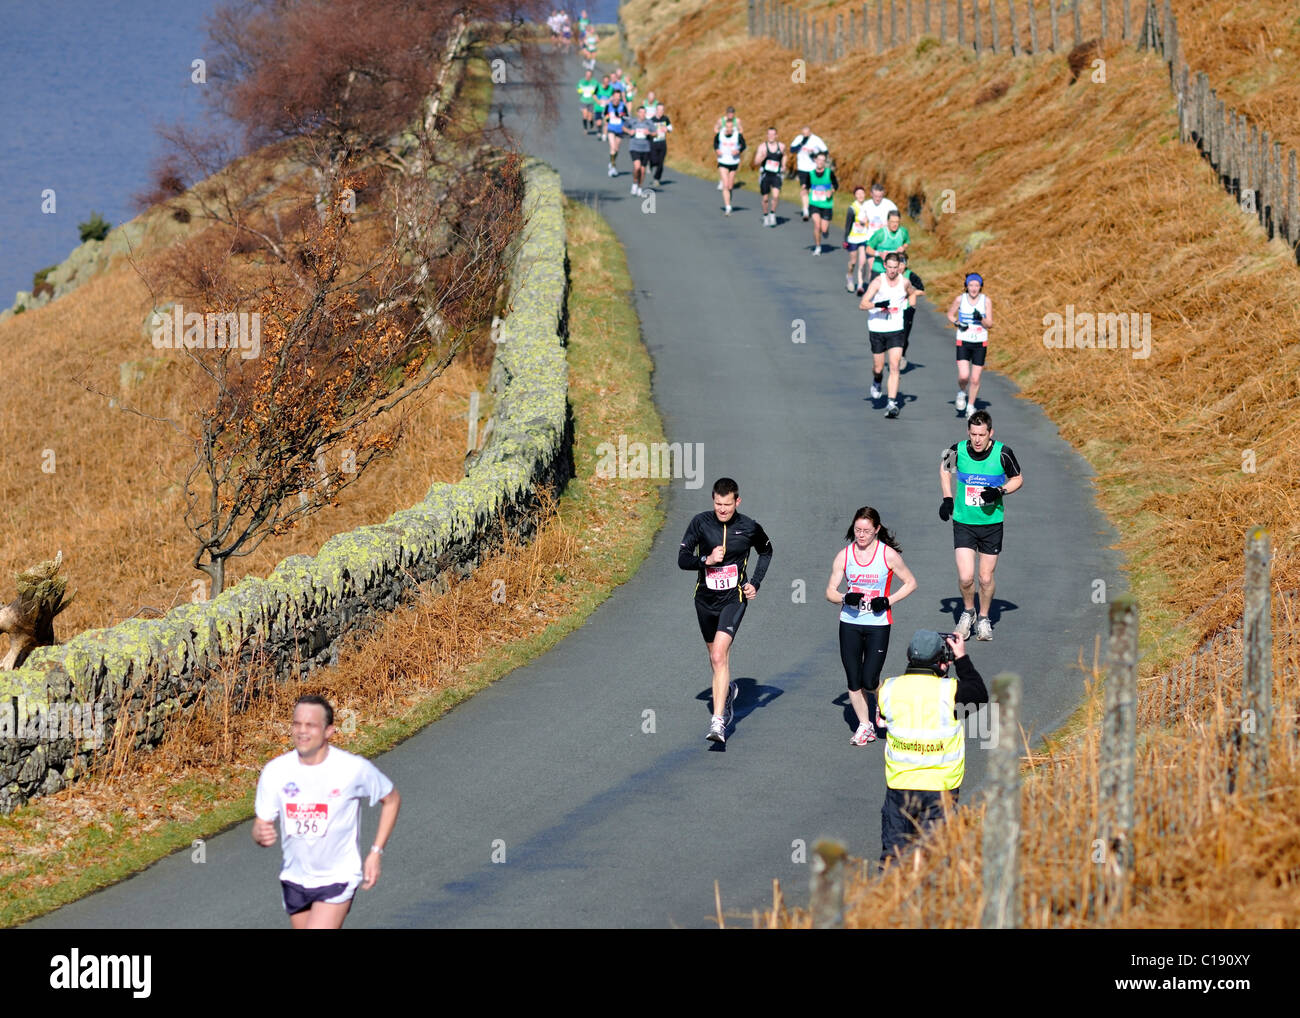 Capturing images of half-marathon competitors, Haweswater, Cumbria, England Stock Photo